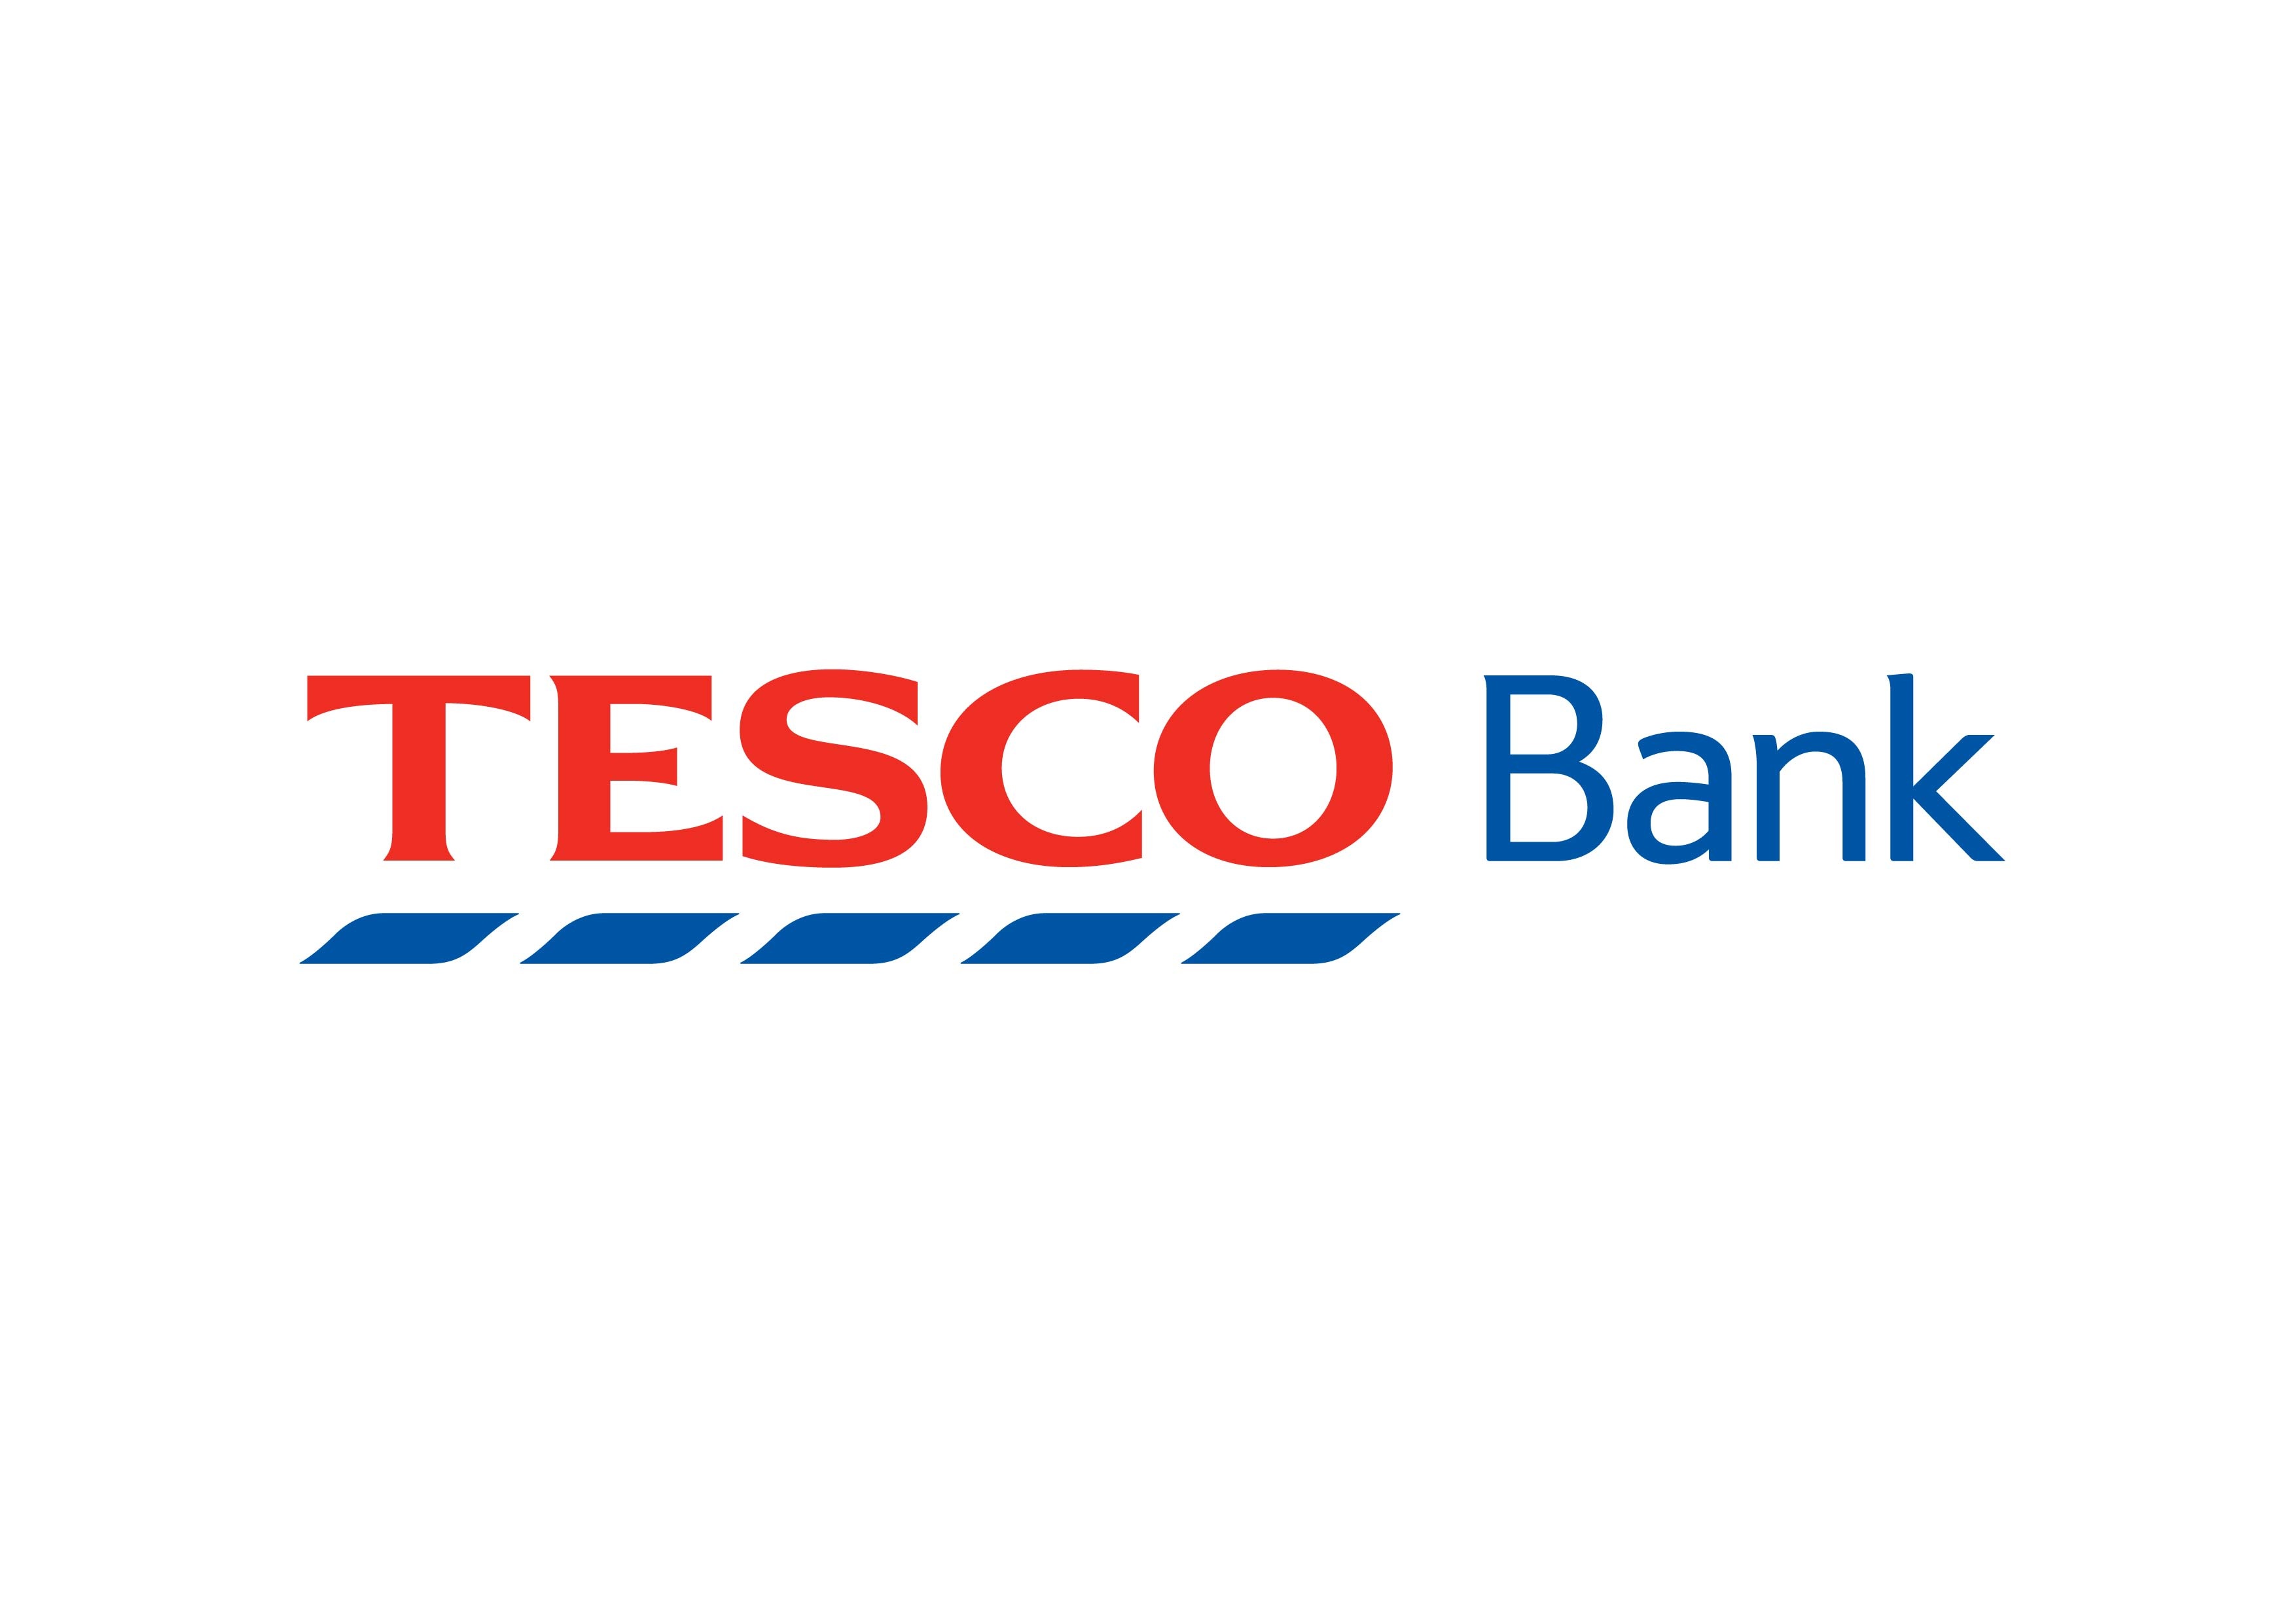 Tesco Bank Brand Logo